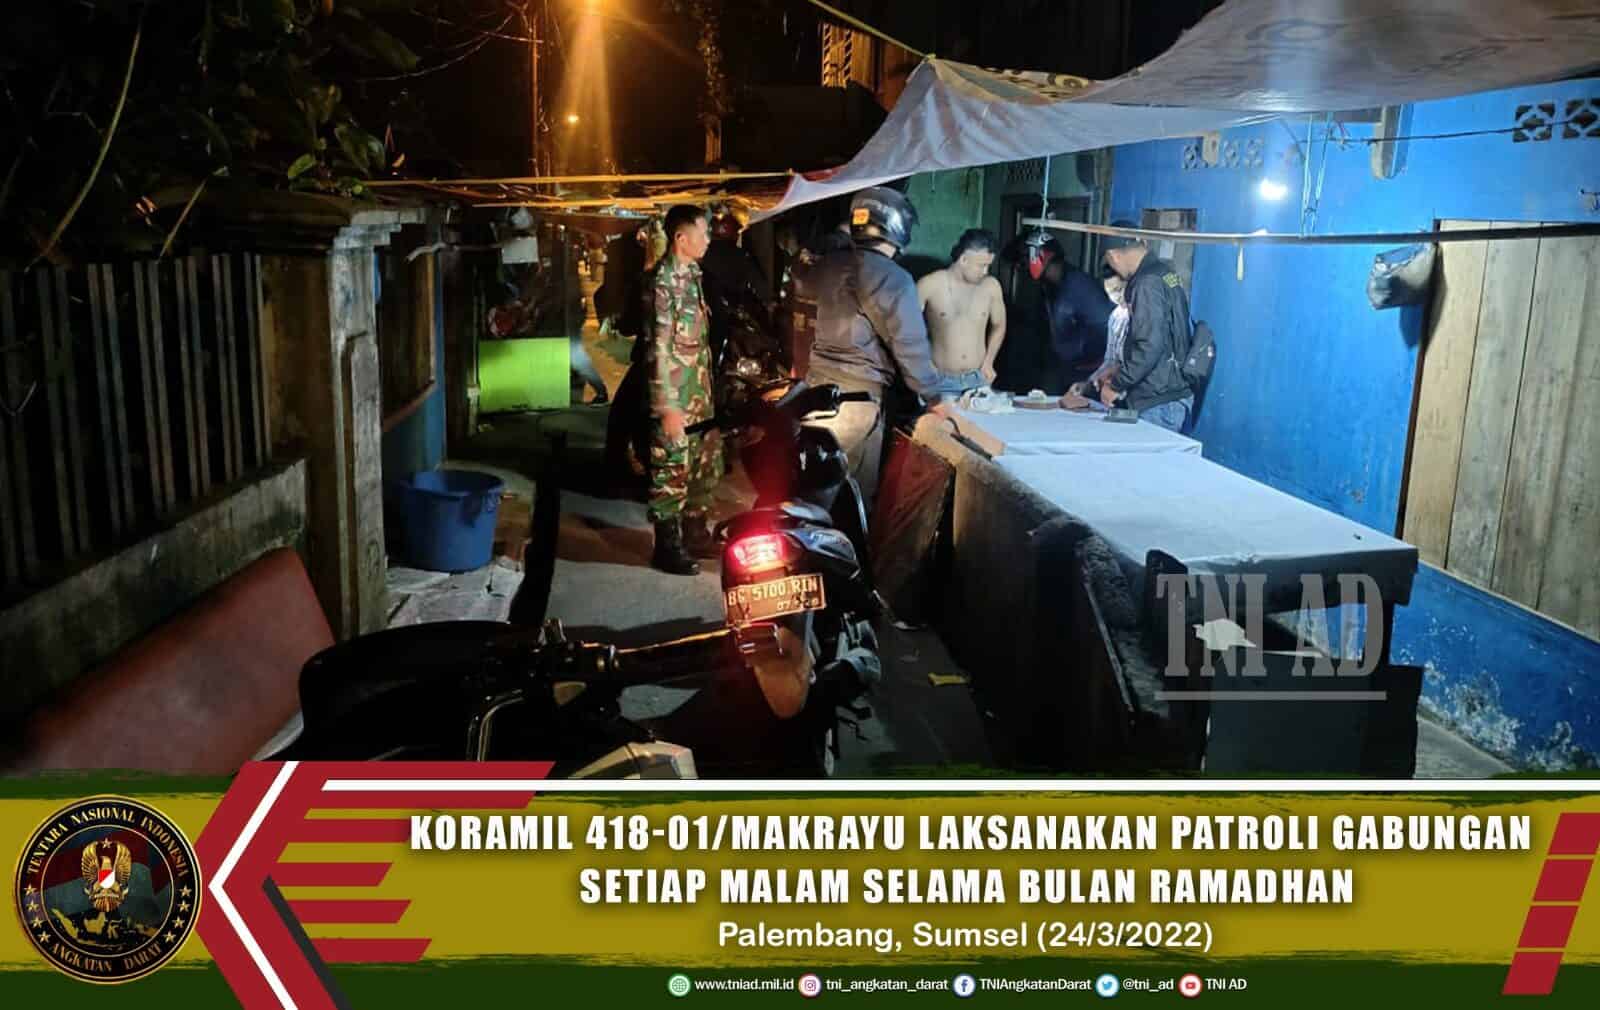 Koramil 418-01/Makrayu Laksanakan Patroli Gabungan Setiap Malam Selama Bulan Ramadhan